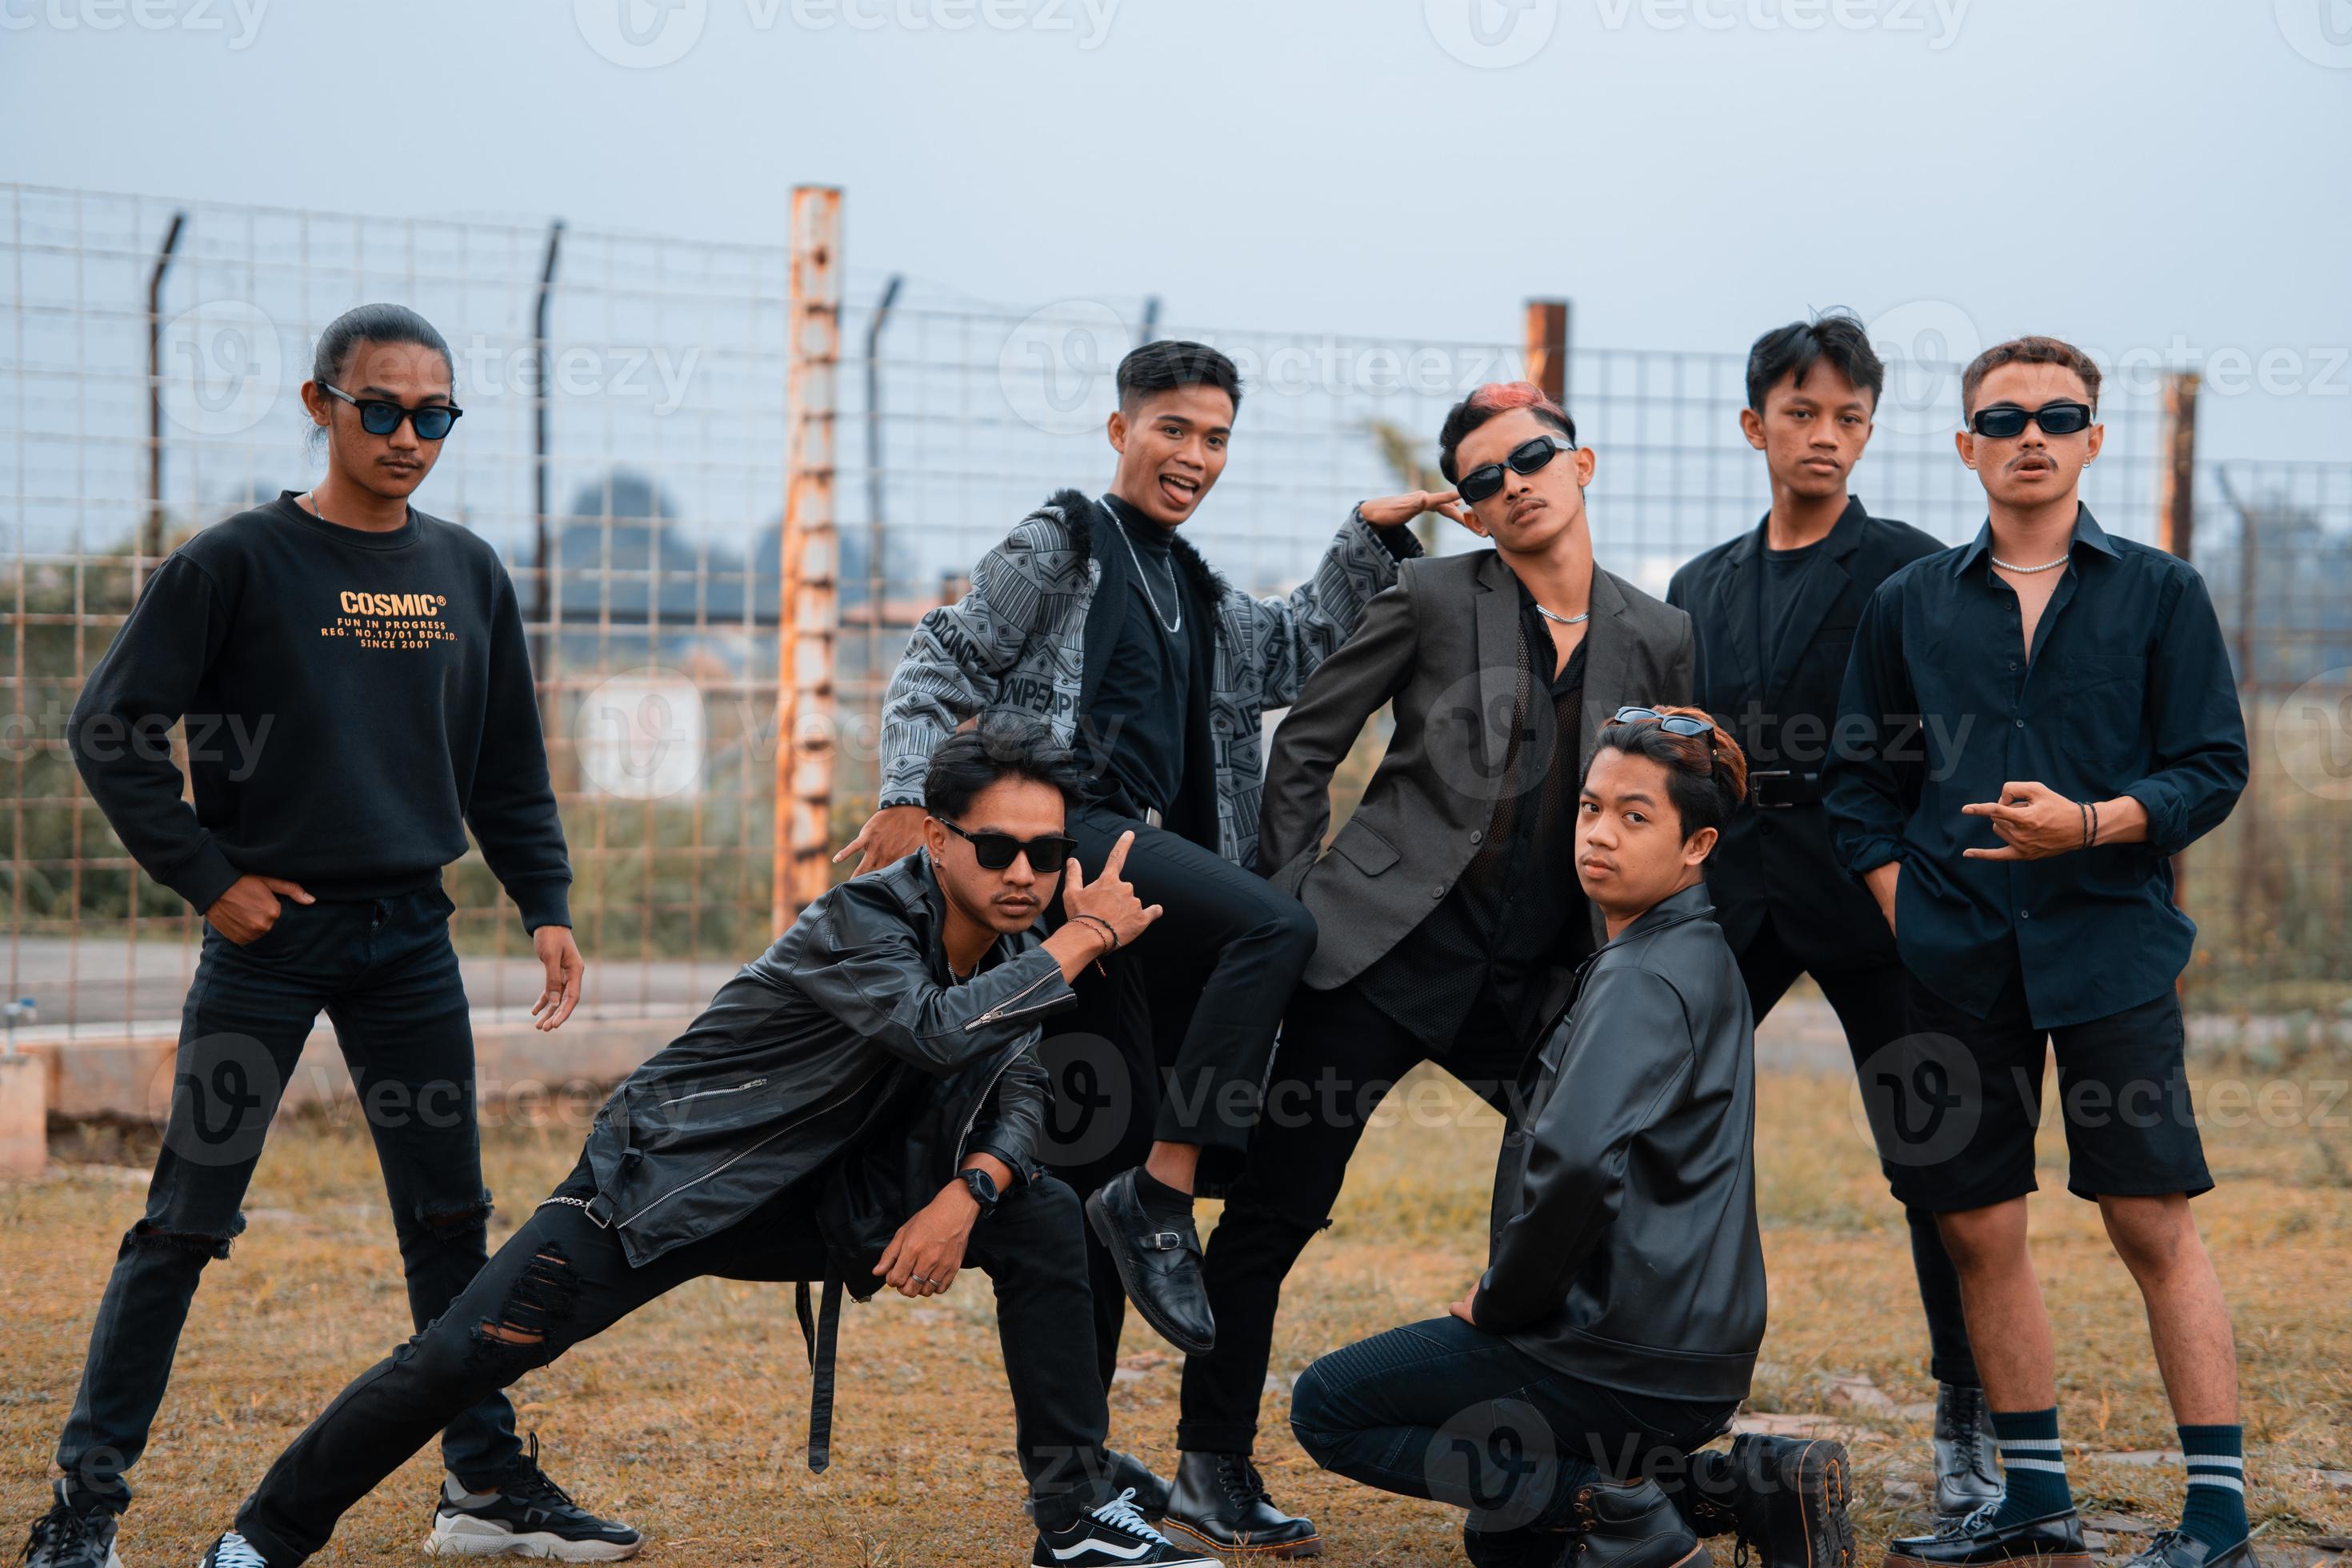 Pef Mam President een groep van tiener- jongens in zwart kleren poseren heel galant met hun  vrienden in een veld- 20444602 Stockfoto